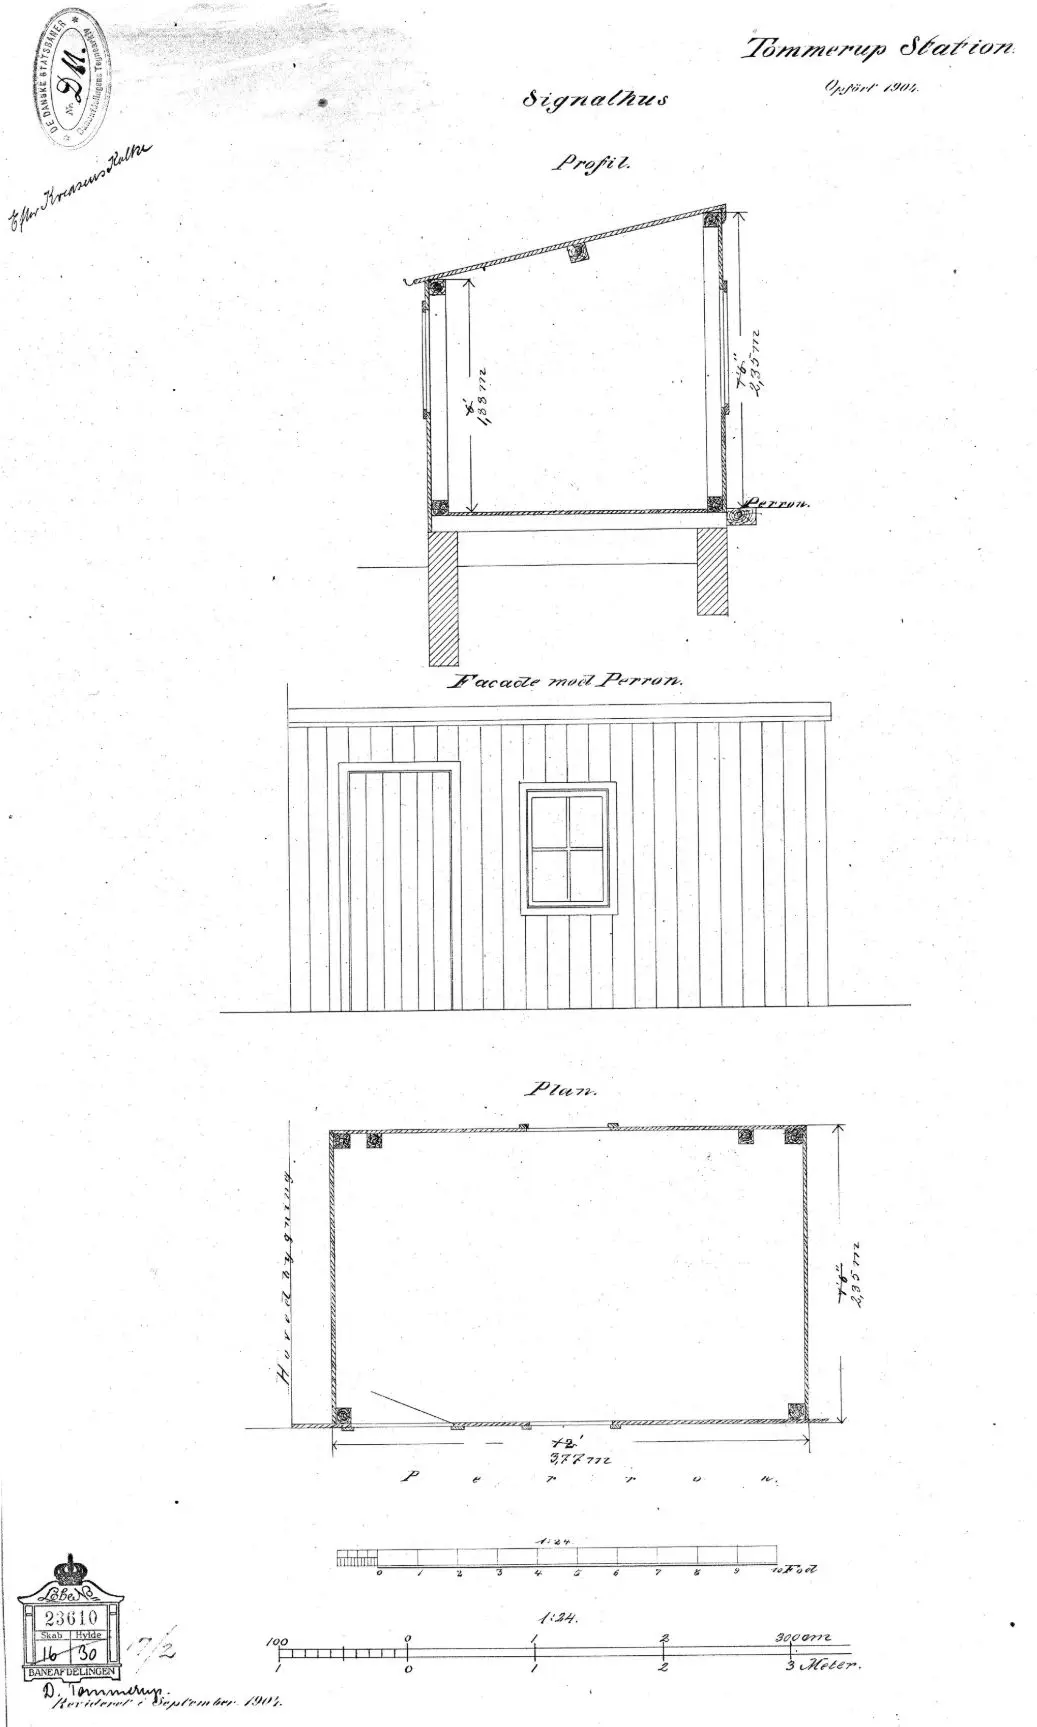 Tegning af Tommerup Stations kommandopost.